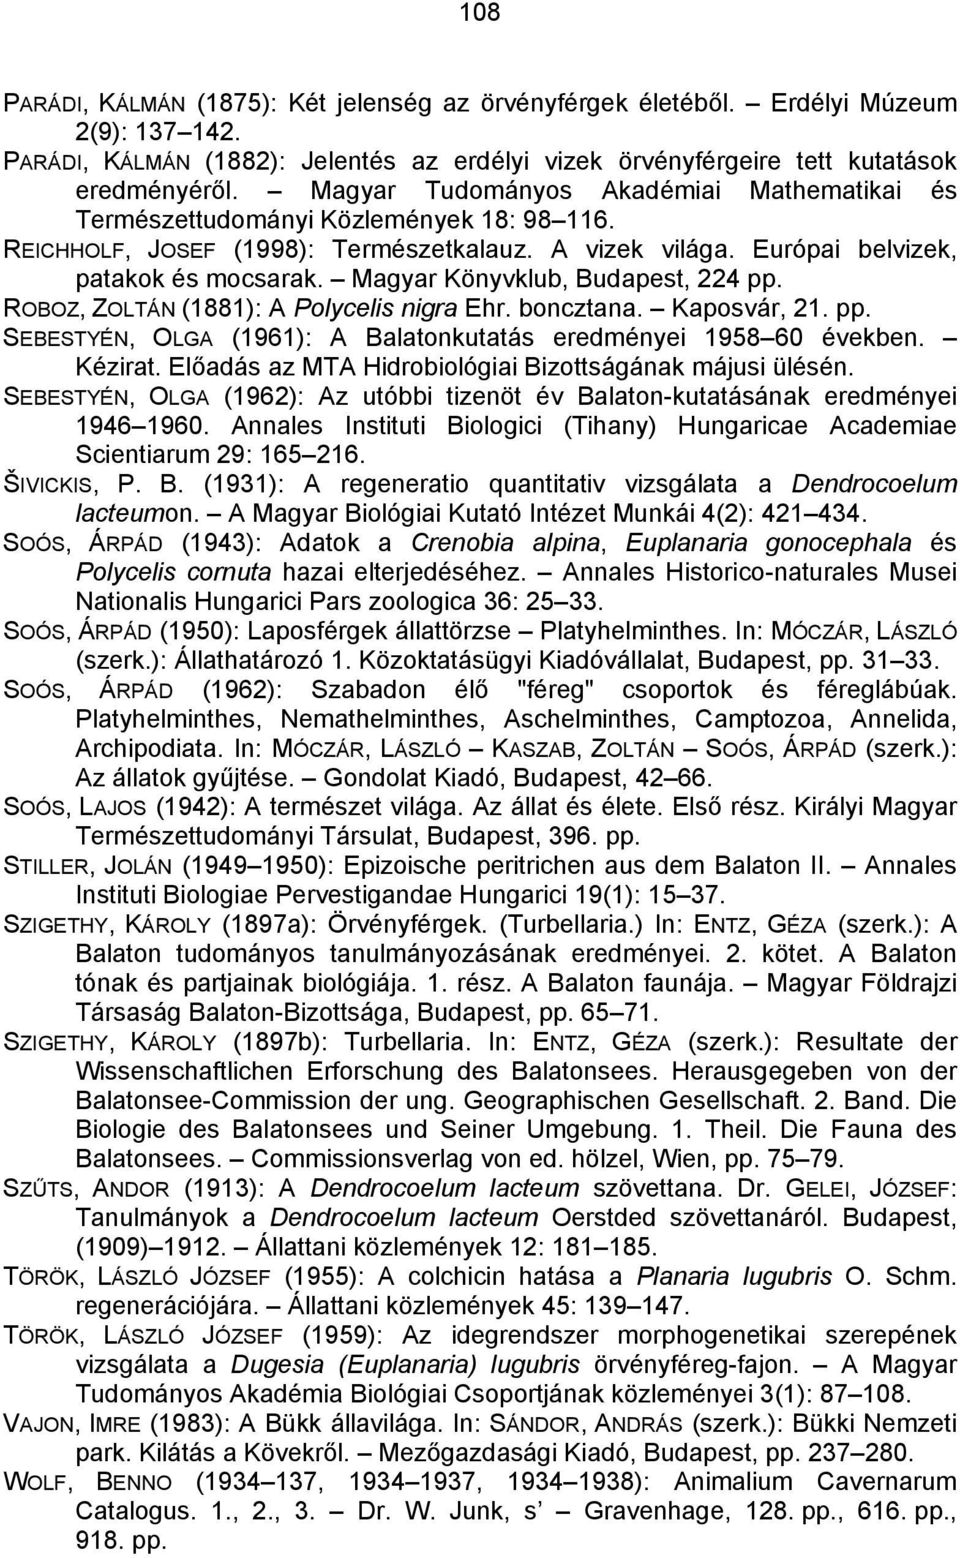 Magyar Könyvklub, Budapest, 224 pp. ROBOZ, ZOLTÁN (1881): A Polycelis nigra Ehr. boncztana. Kaposvár, 21. pp. SEBESTYÉN, OLGA (1961): A Balatonkutatás eredményei 1958 60 években. Kézirat.